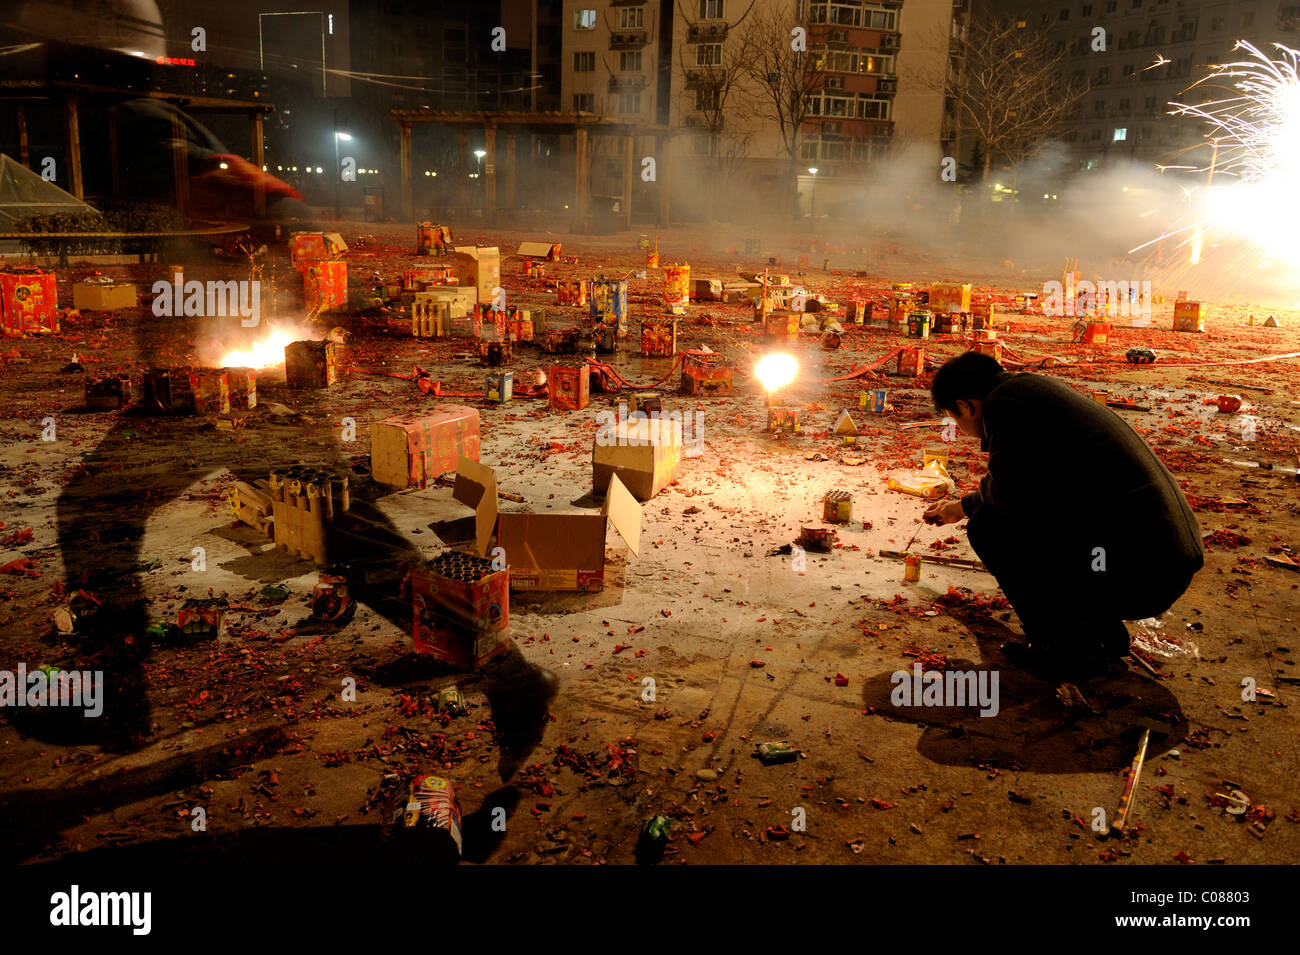 Chine - un homme déclenche un feu d'artifice alors qu'un agent de sécurité dans les scoots Lantern Festival nuit à Beijing.17-Feb-2011 Banque D'Images